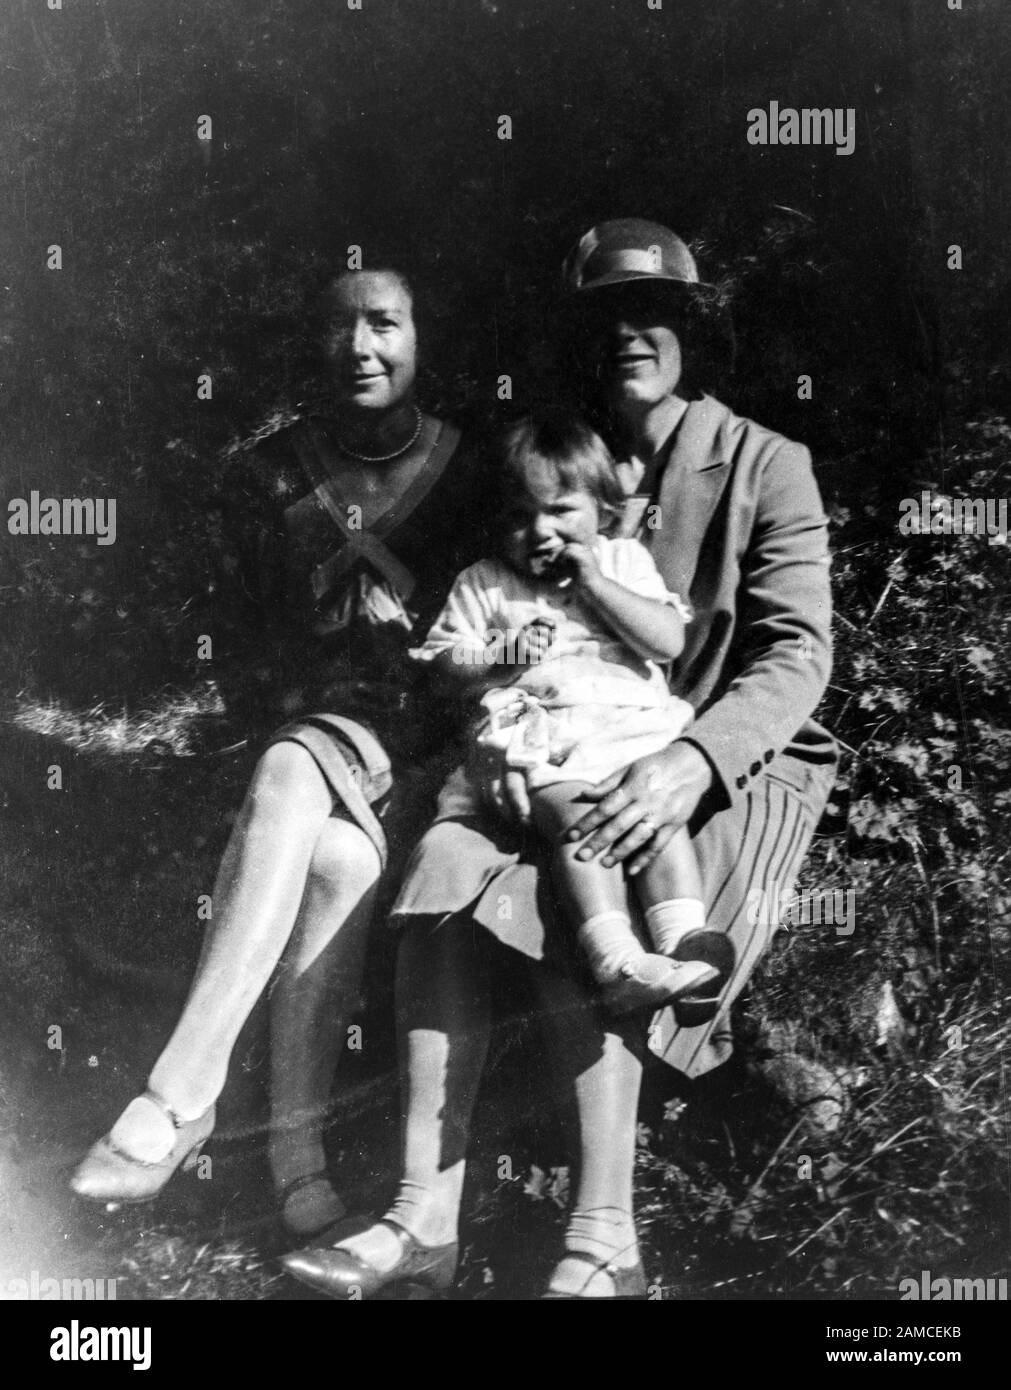 Archivbild zweier Damen mit einem Kleinkind, ca. 1920er Jahre, direkt vom negativ gescannt Stockfoto